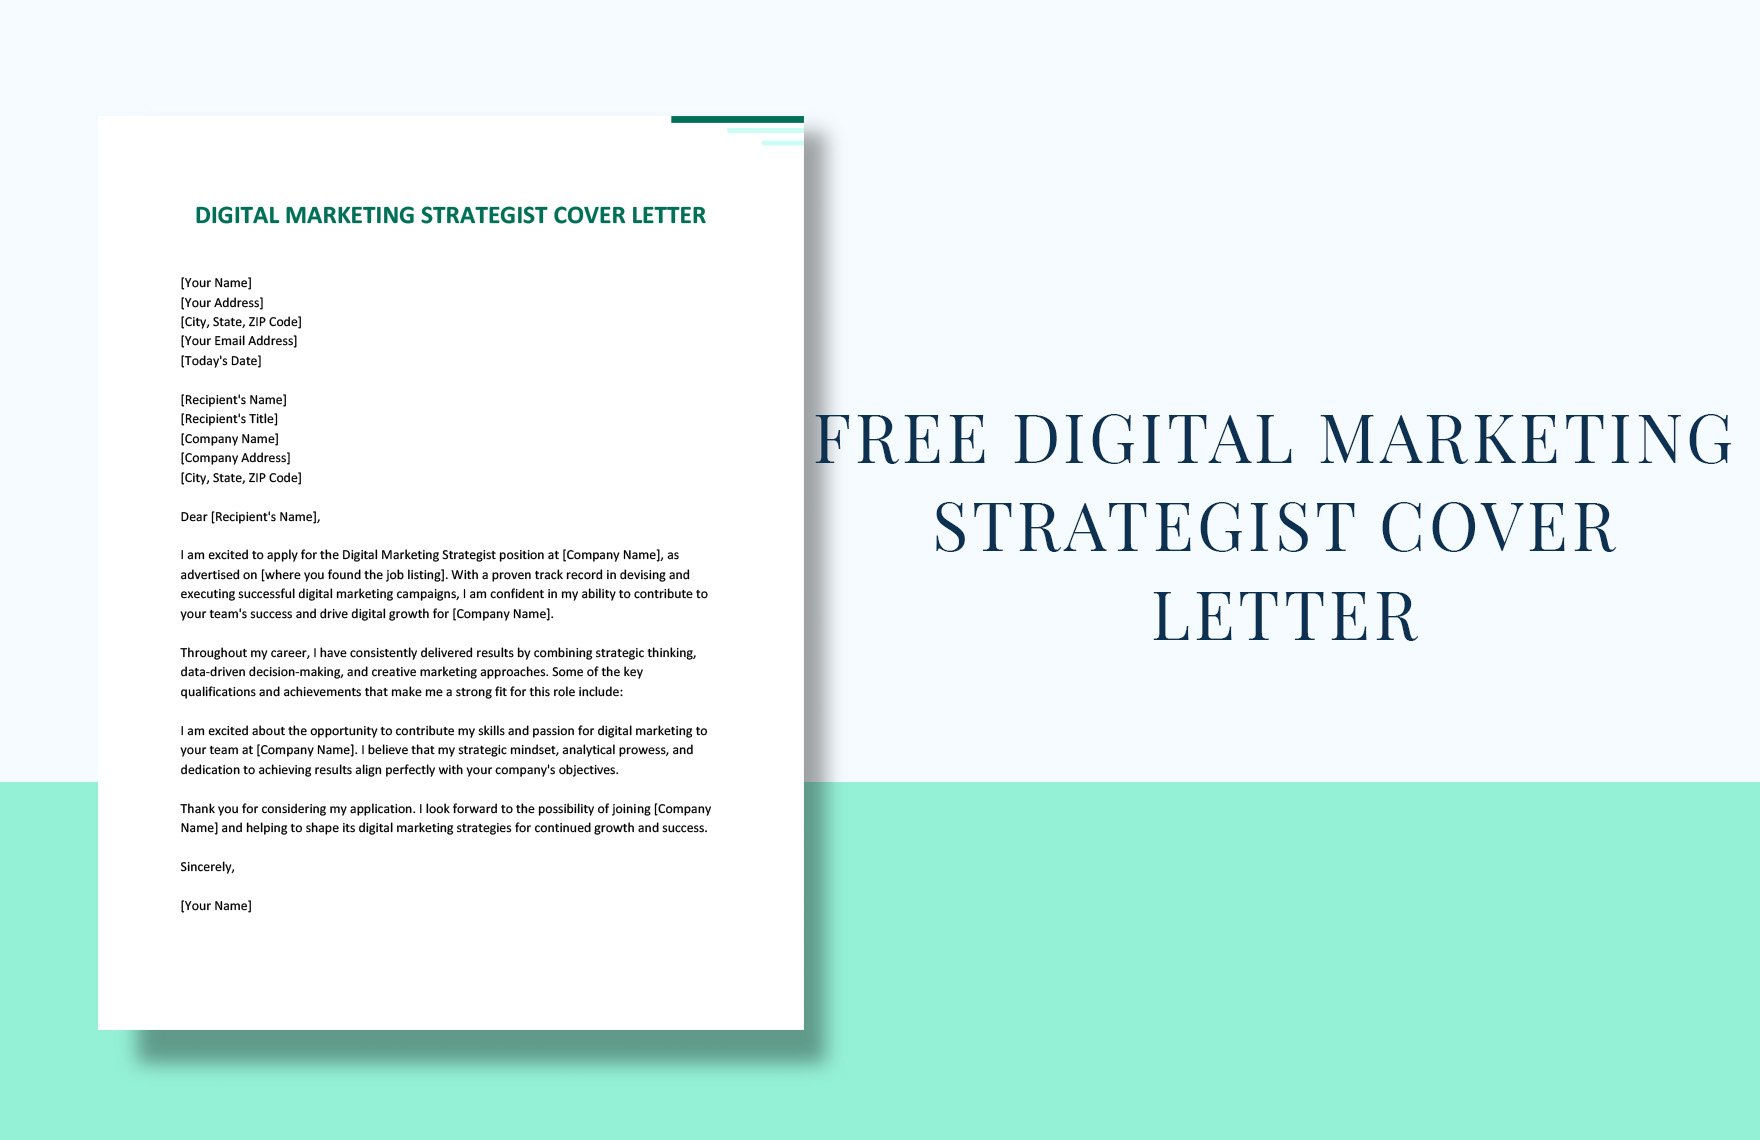 Digital Marketing Strategist Cover Letter